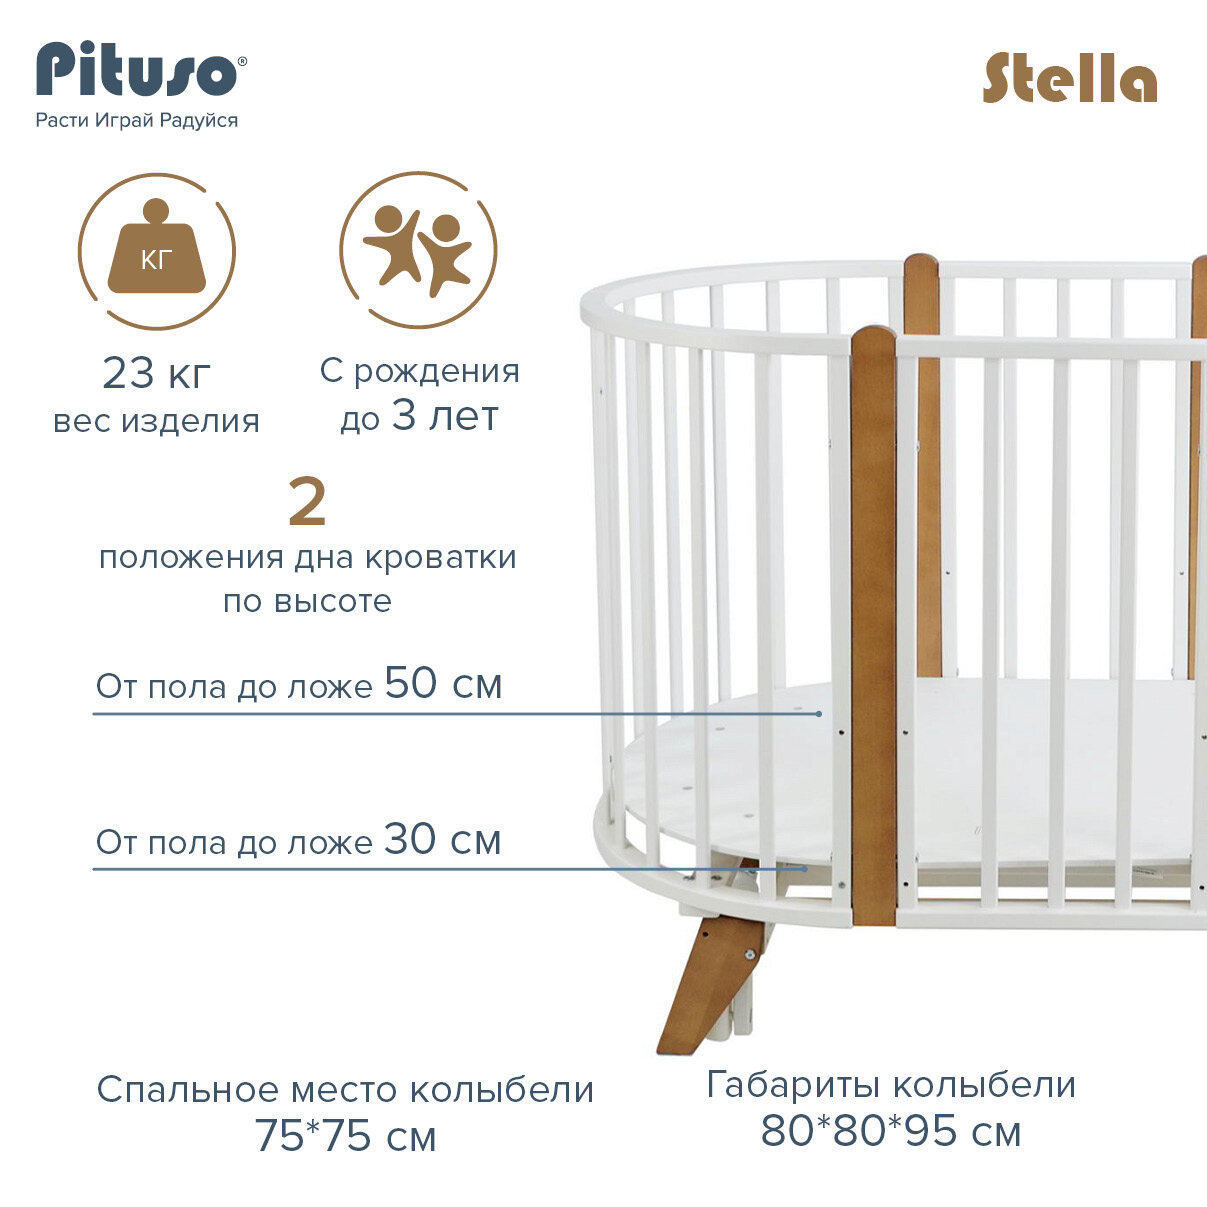 Кровать детская Pituso Stella 6 в1 с универсальным маятником Белый-Бук